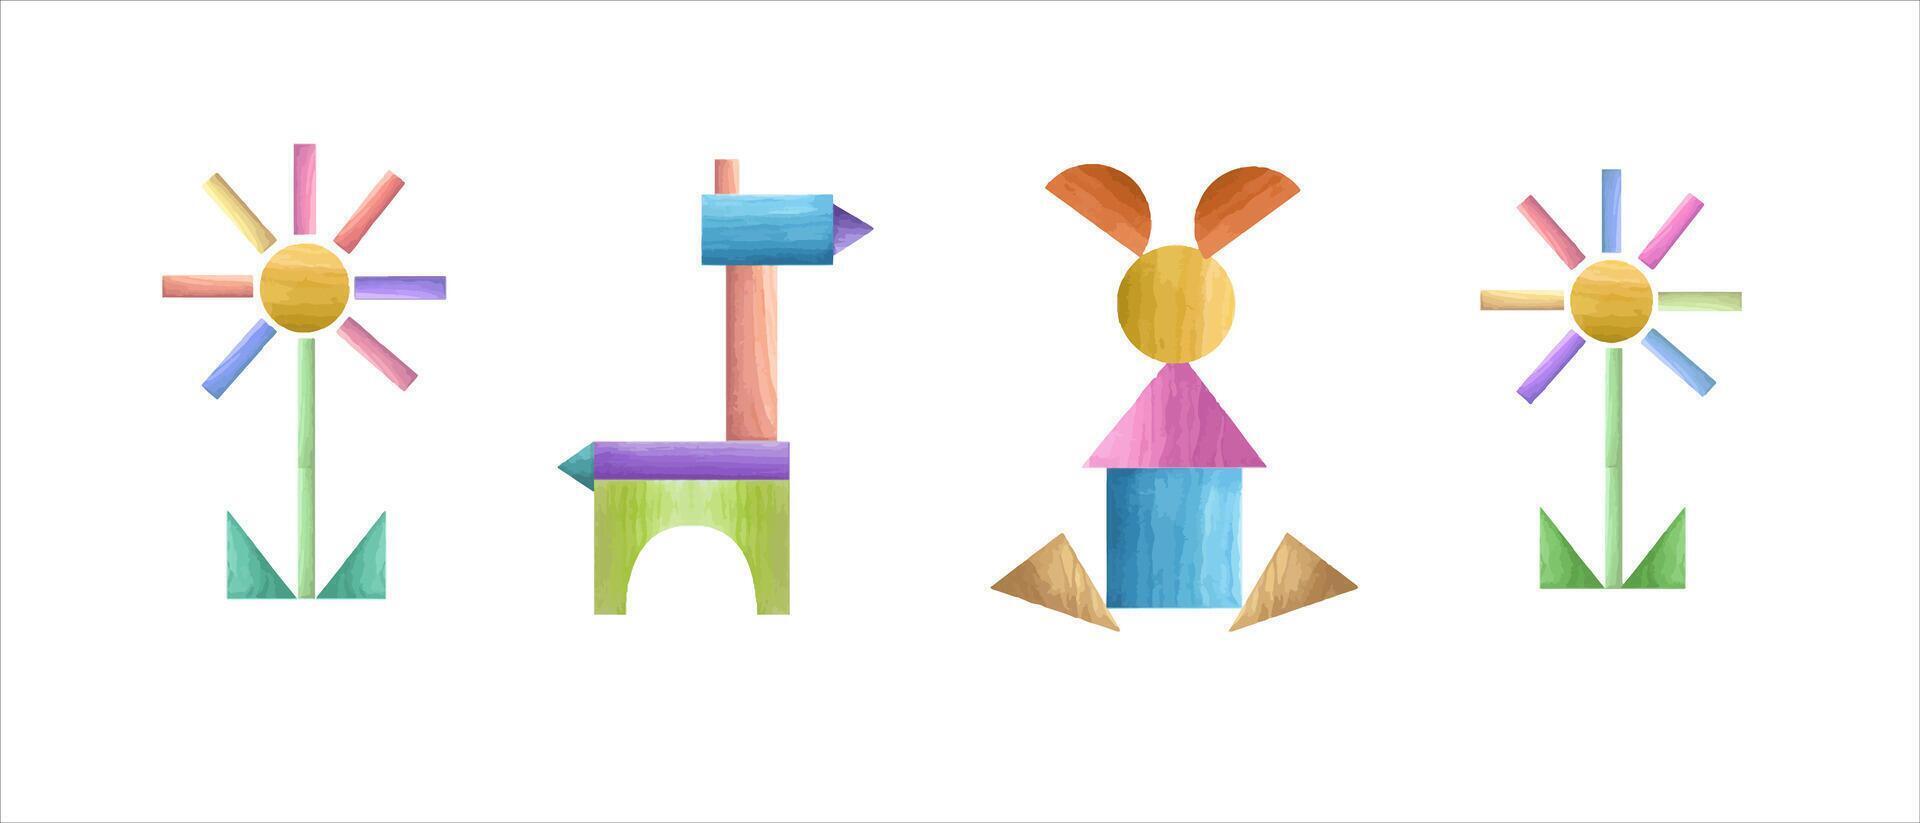 uppsättning av tangram geometrisk pussel. trä- blomma, hare, häst i ljus färger. vattenfärg illustration. vektor